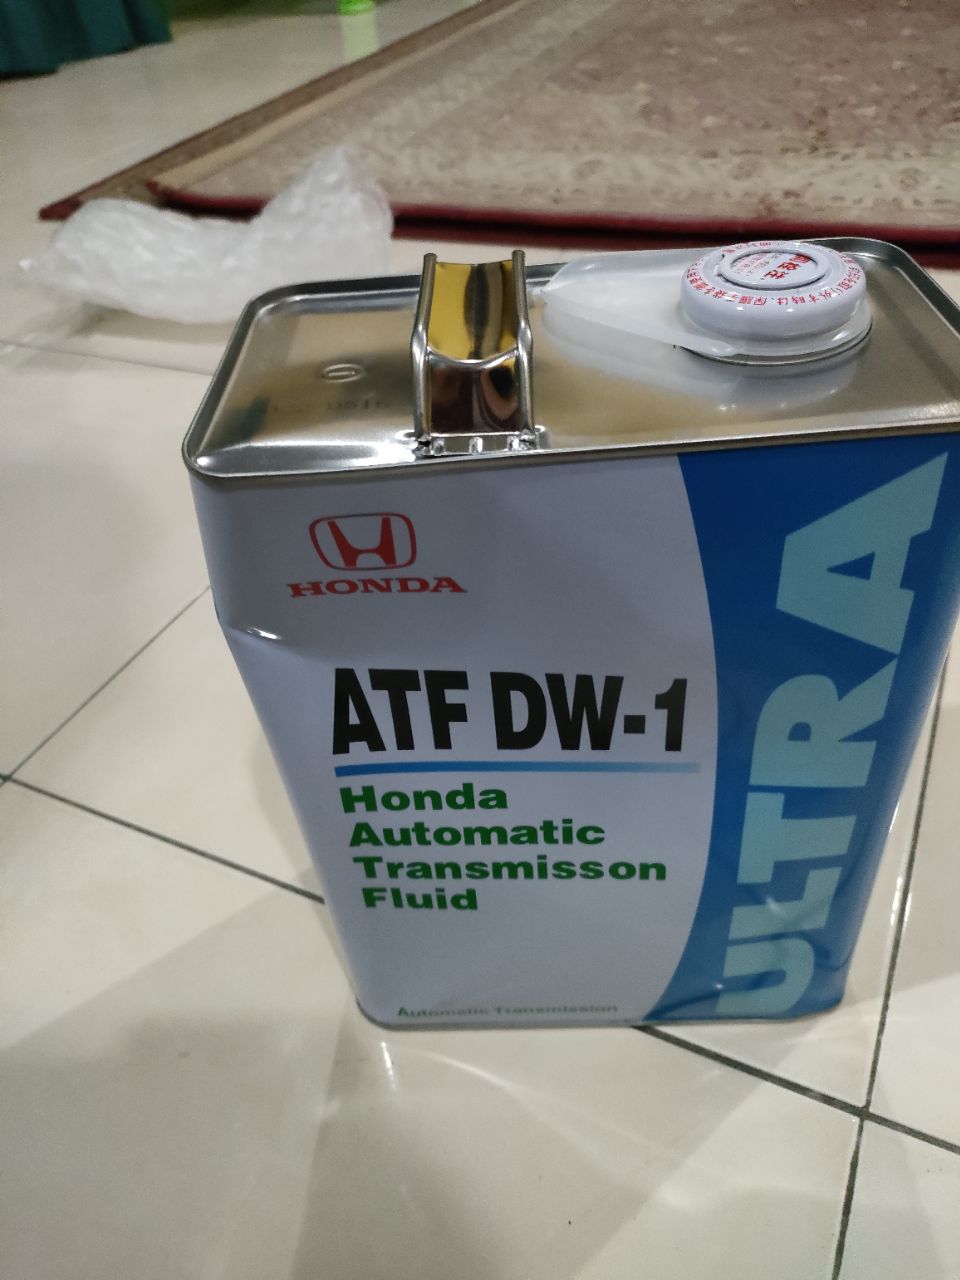 08266-99964 Honda Ultra DW-1 ATF gear oil (4 liter) DW1 for Honda